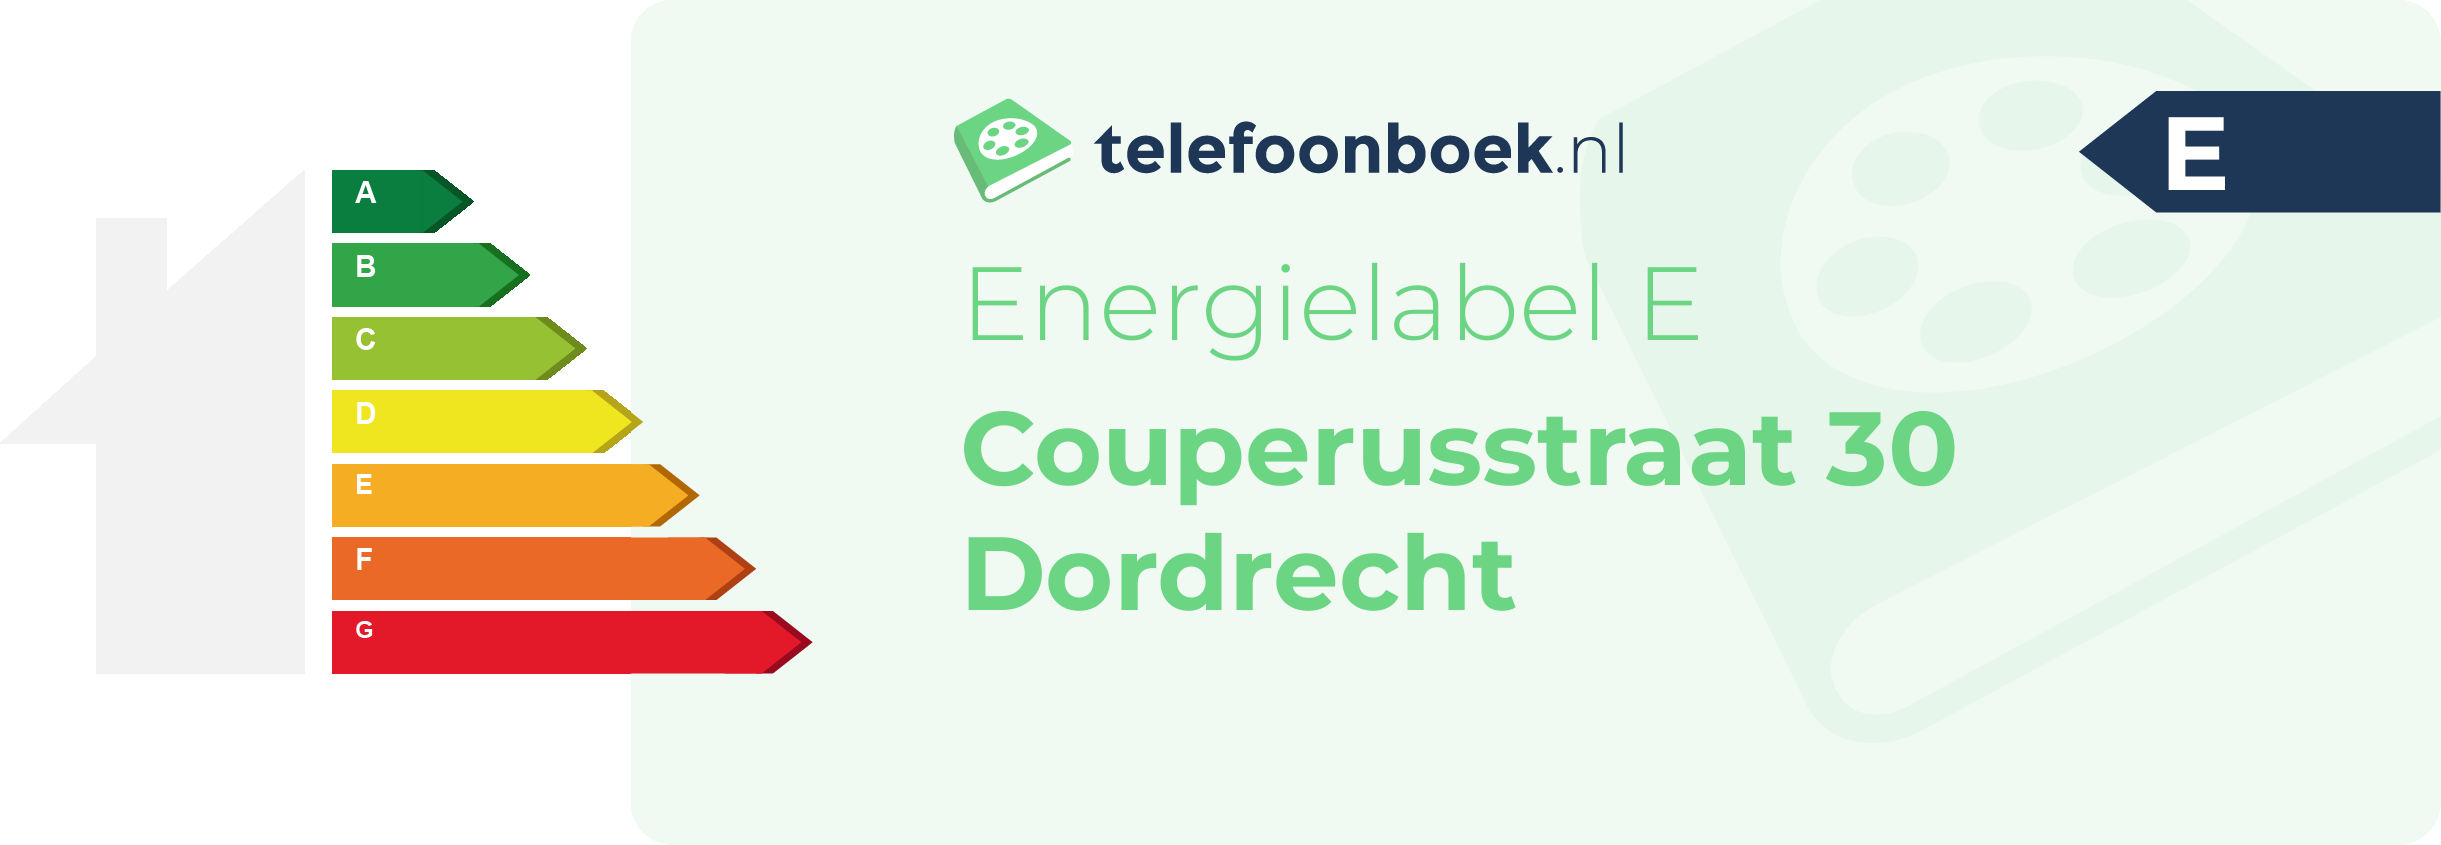 Energielabel Couperusstraat 30 Dordrecht